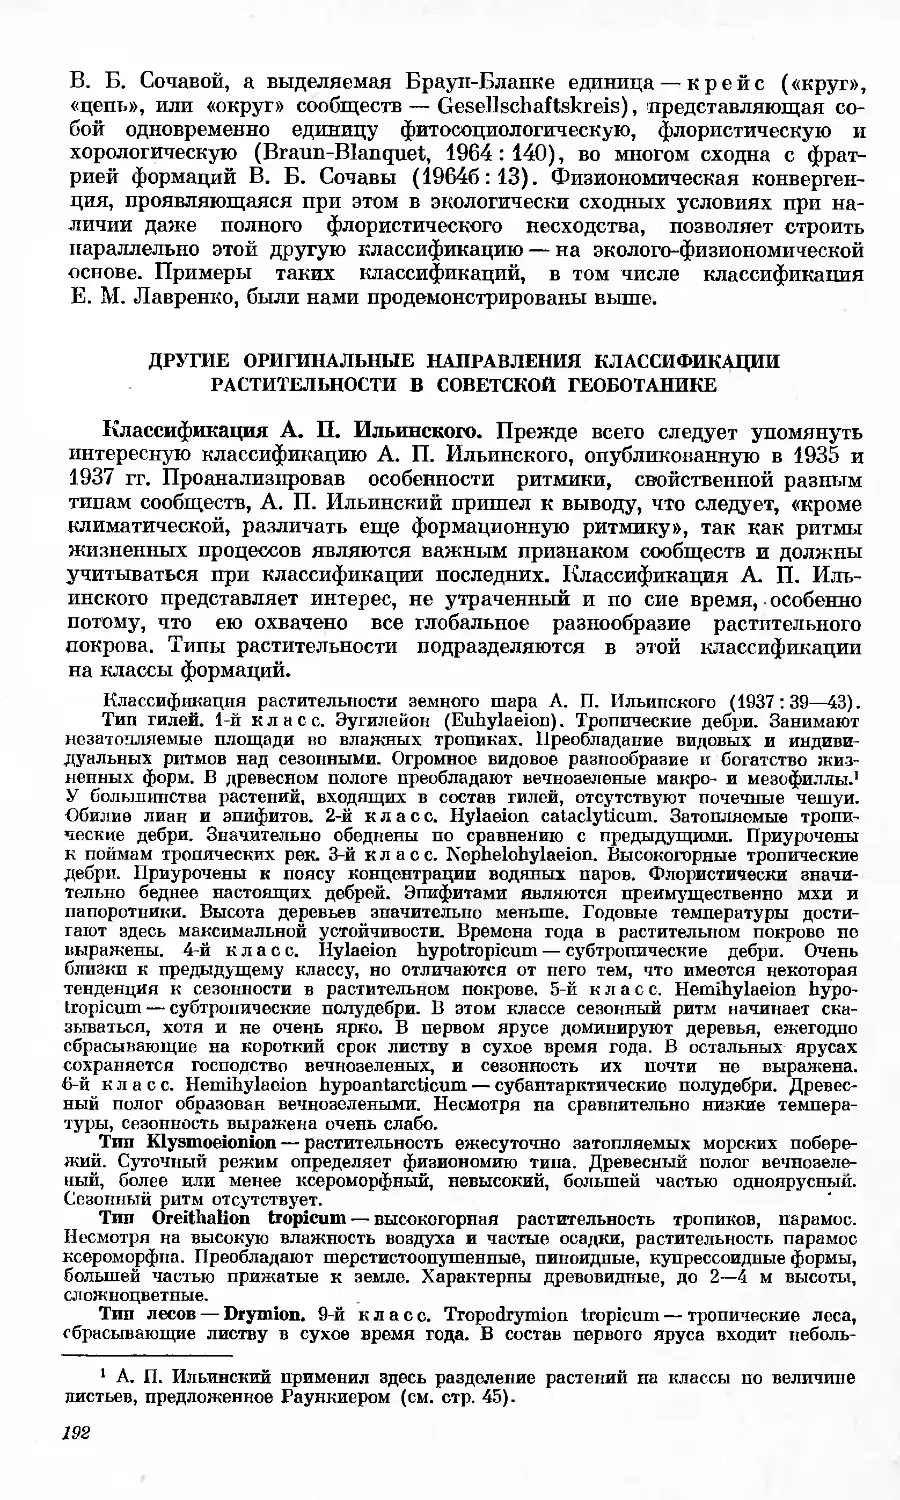 Другие оригинальные направления классификации растительности в советской геоботанике